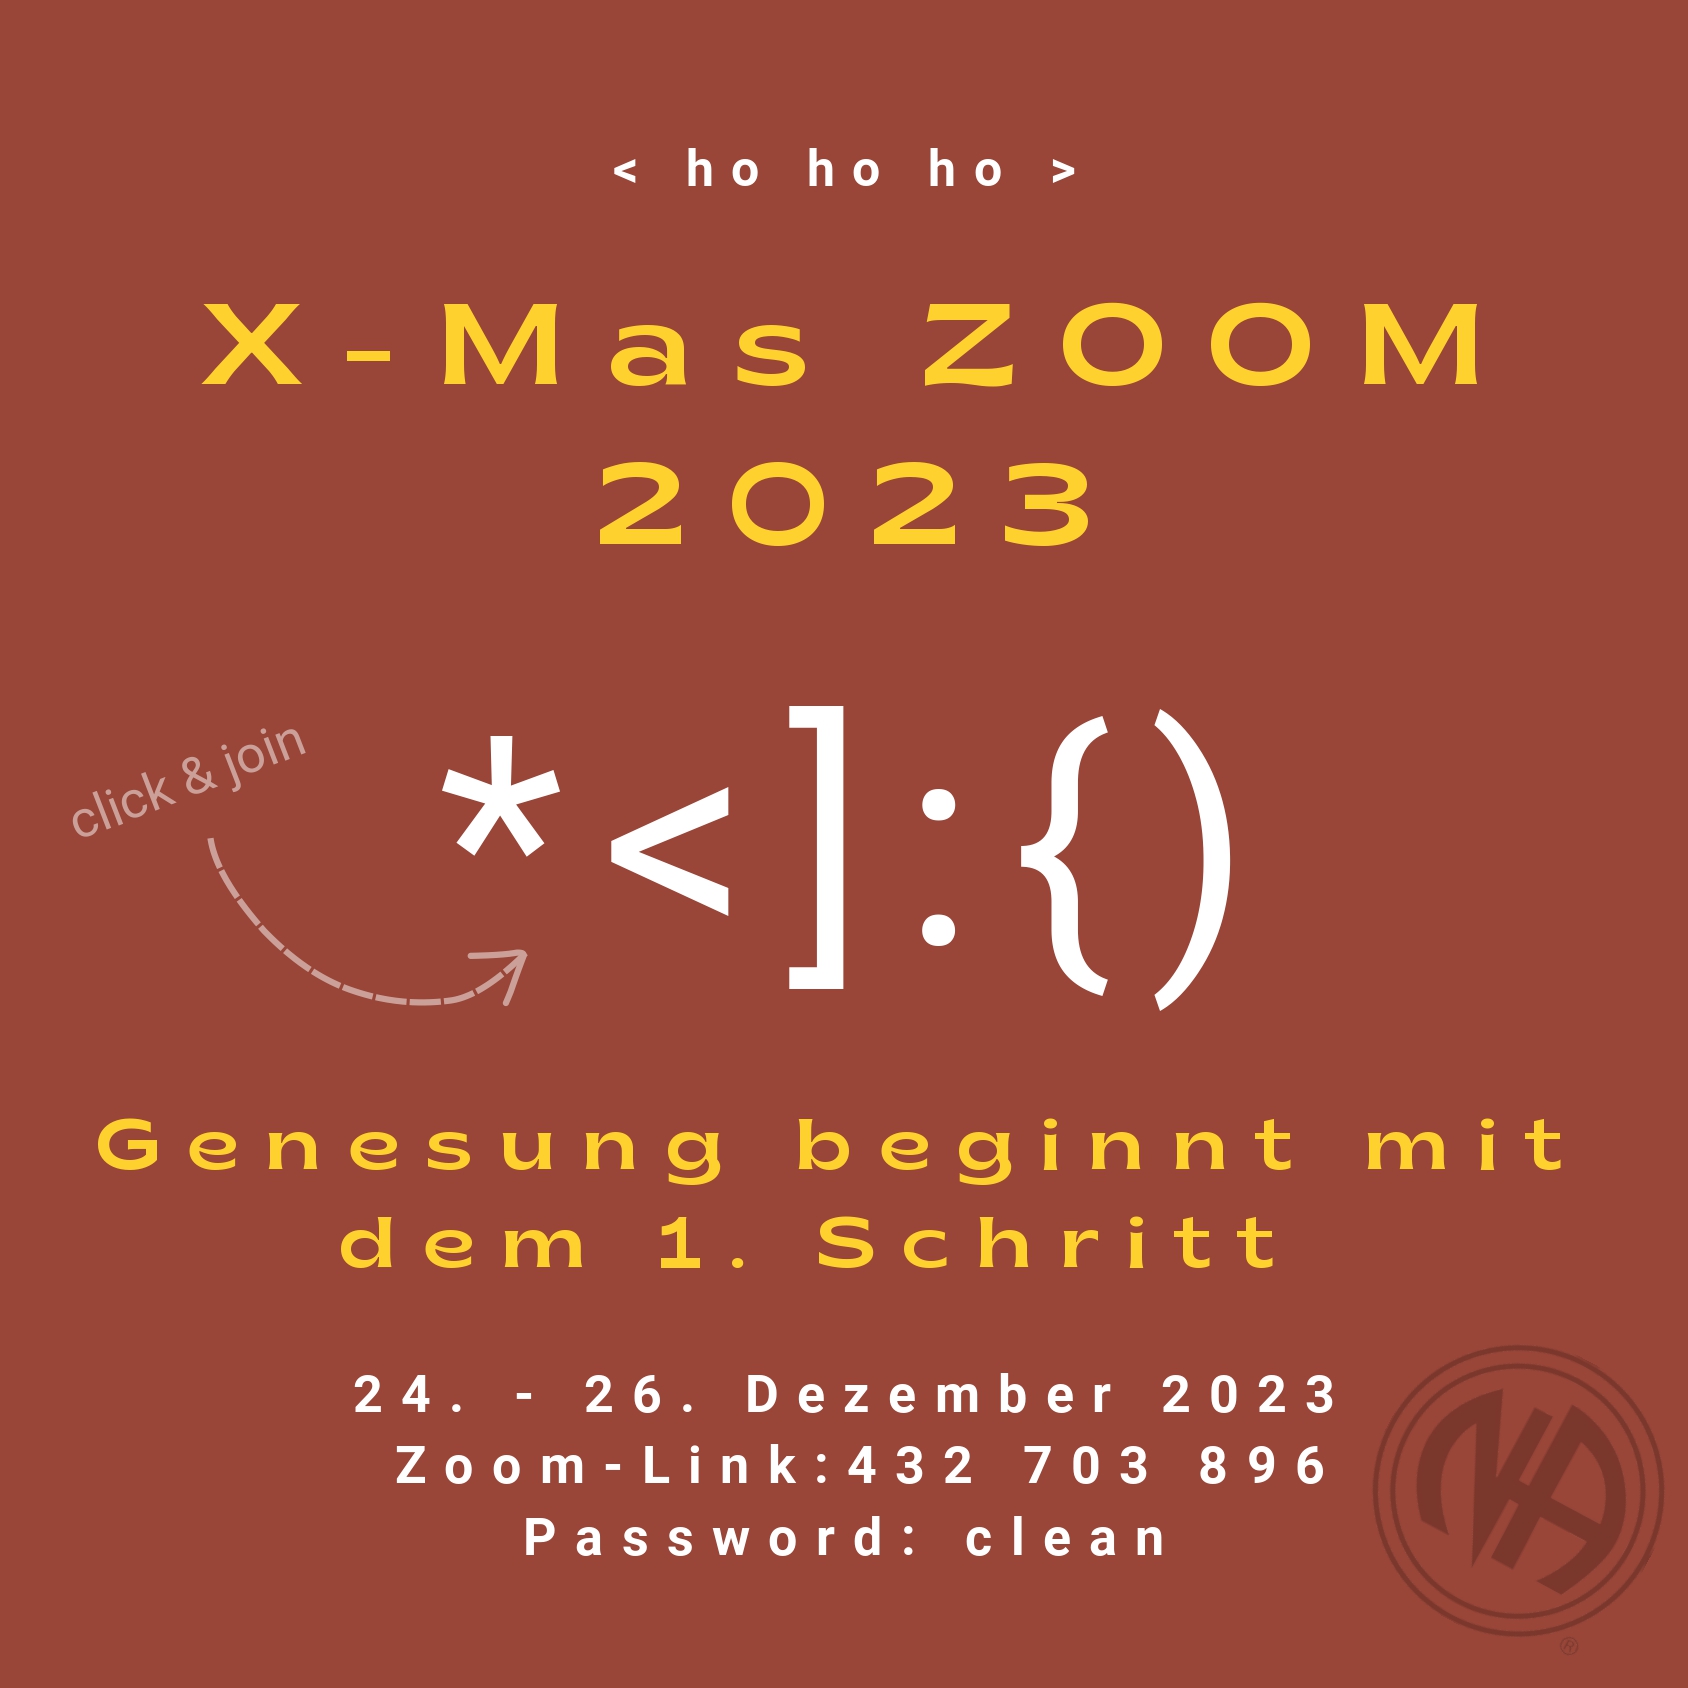 X-Mas Zoom 2023